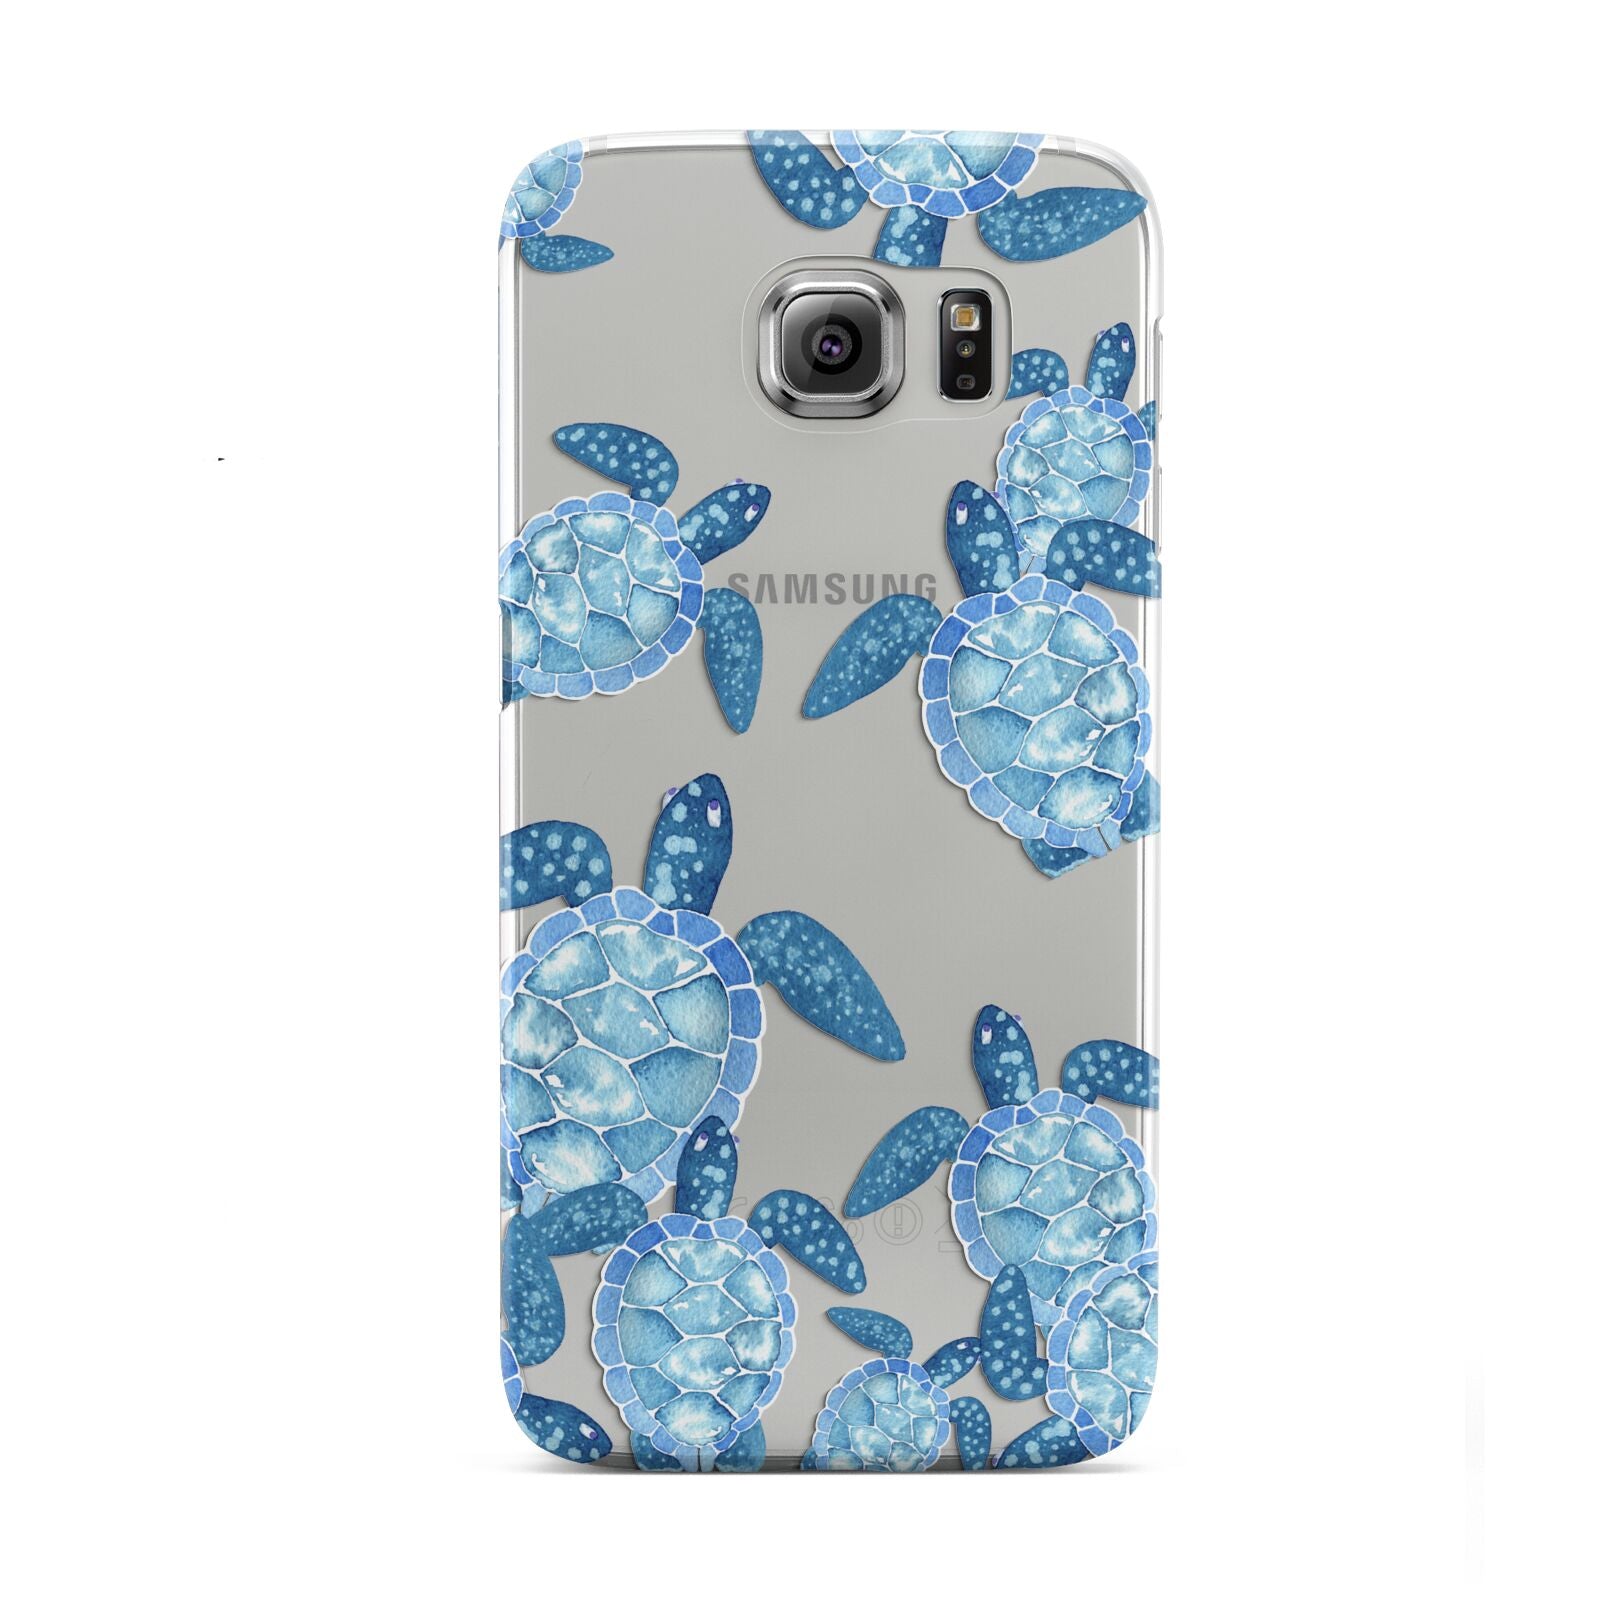 Turtle Samsung Galaxy S6 Case